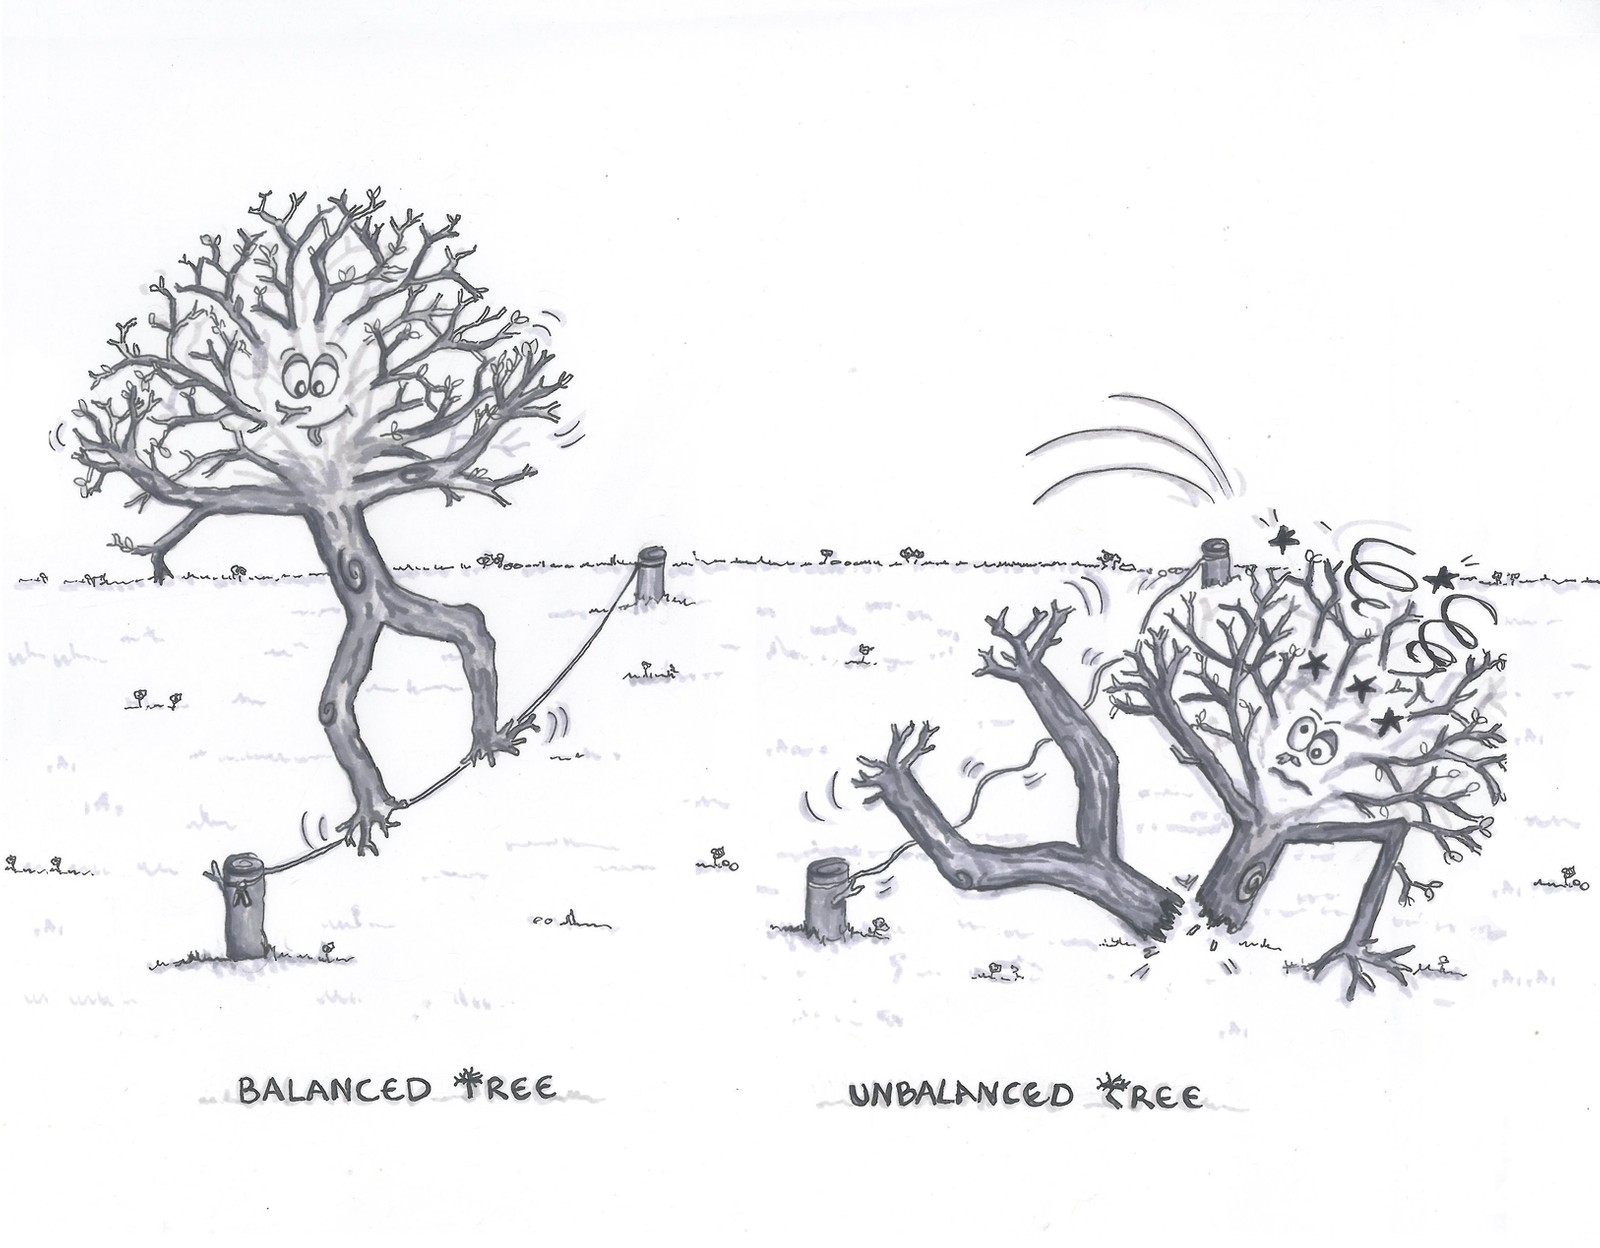 Arbre équilibré (Balanced Tree) et Arbre désequilibré (Unbalanced Tree)